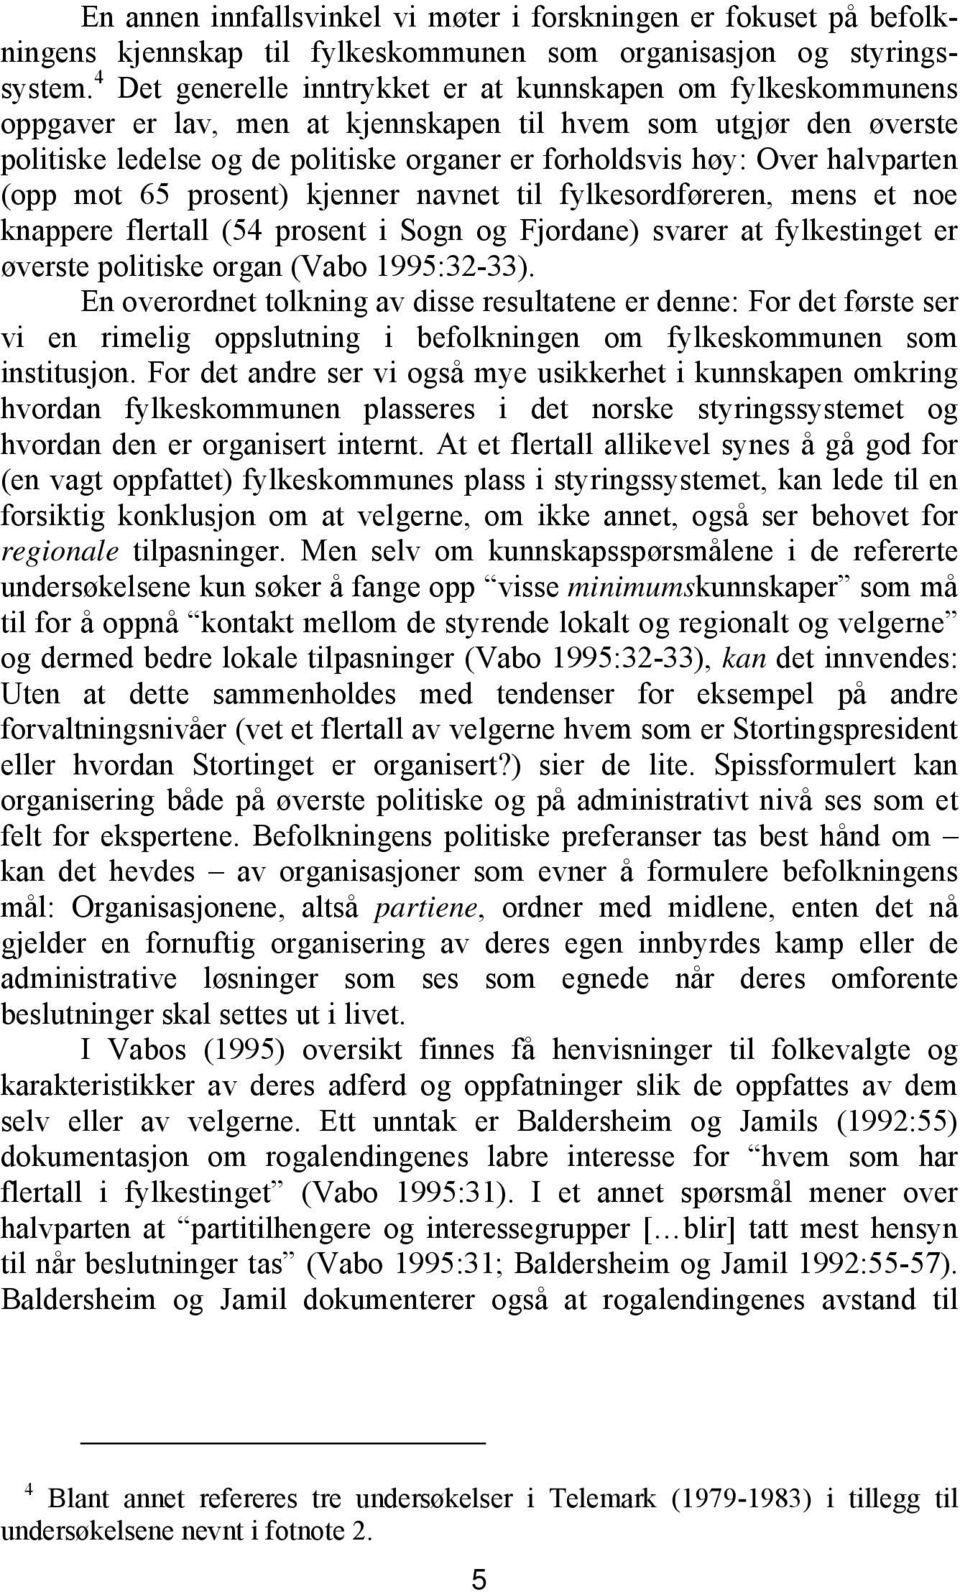 halvparten (opp mot 65 prosent) kjenner navnet til fylkesordføreren, mens et noe knappere flertall (54 prosent i Sogn og Fjordane) svarer at fylkestinget er øverste politiske organ (Vabo 1995:32-33).